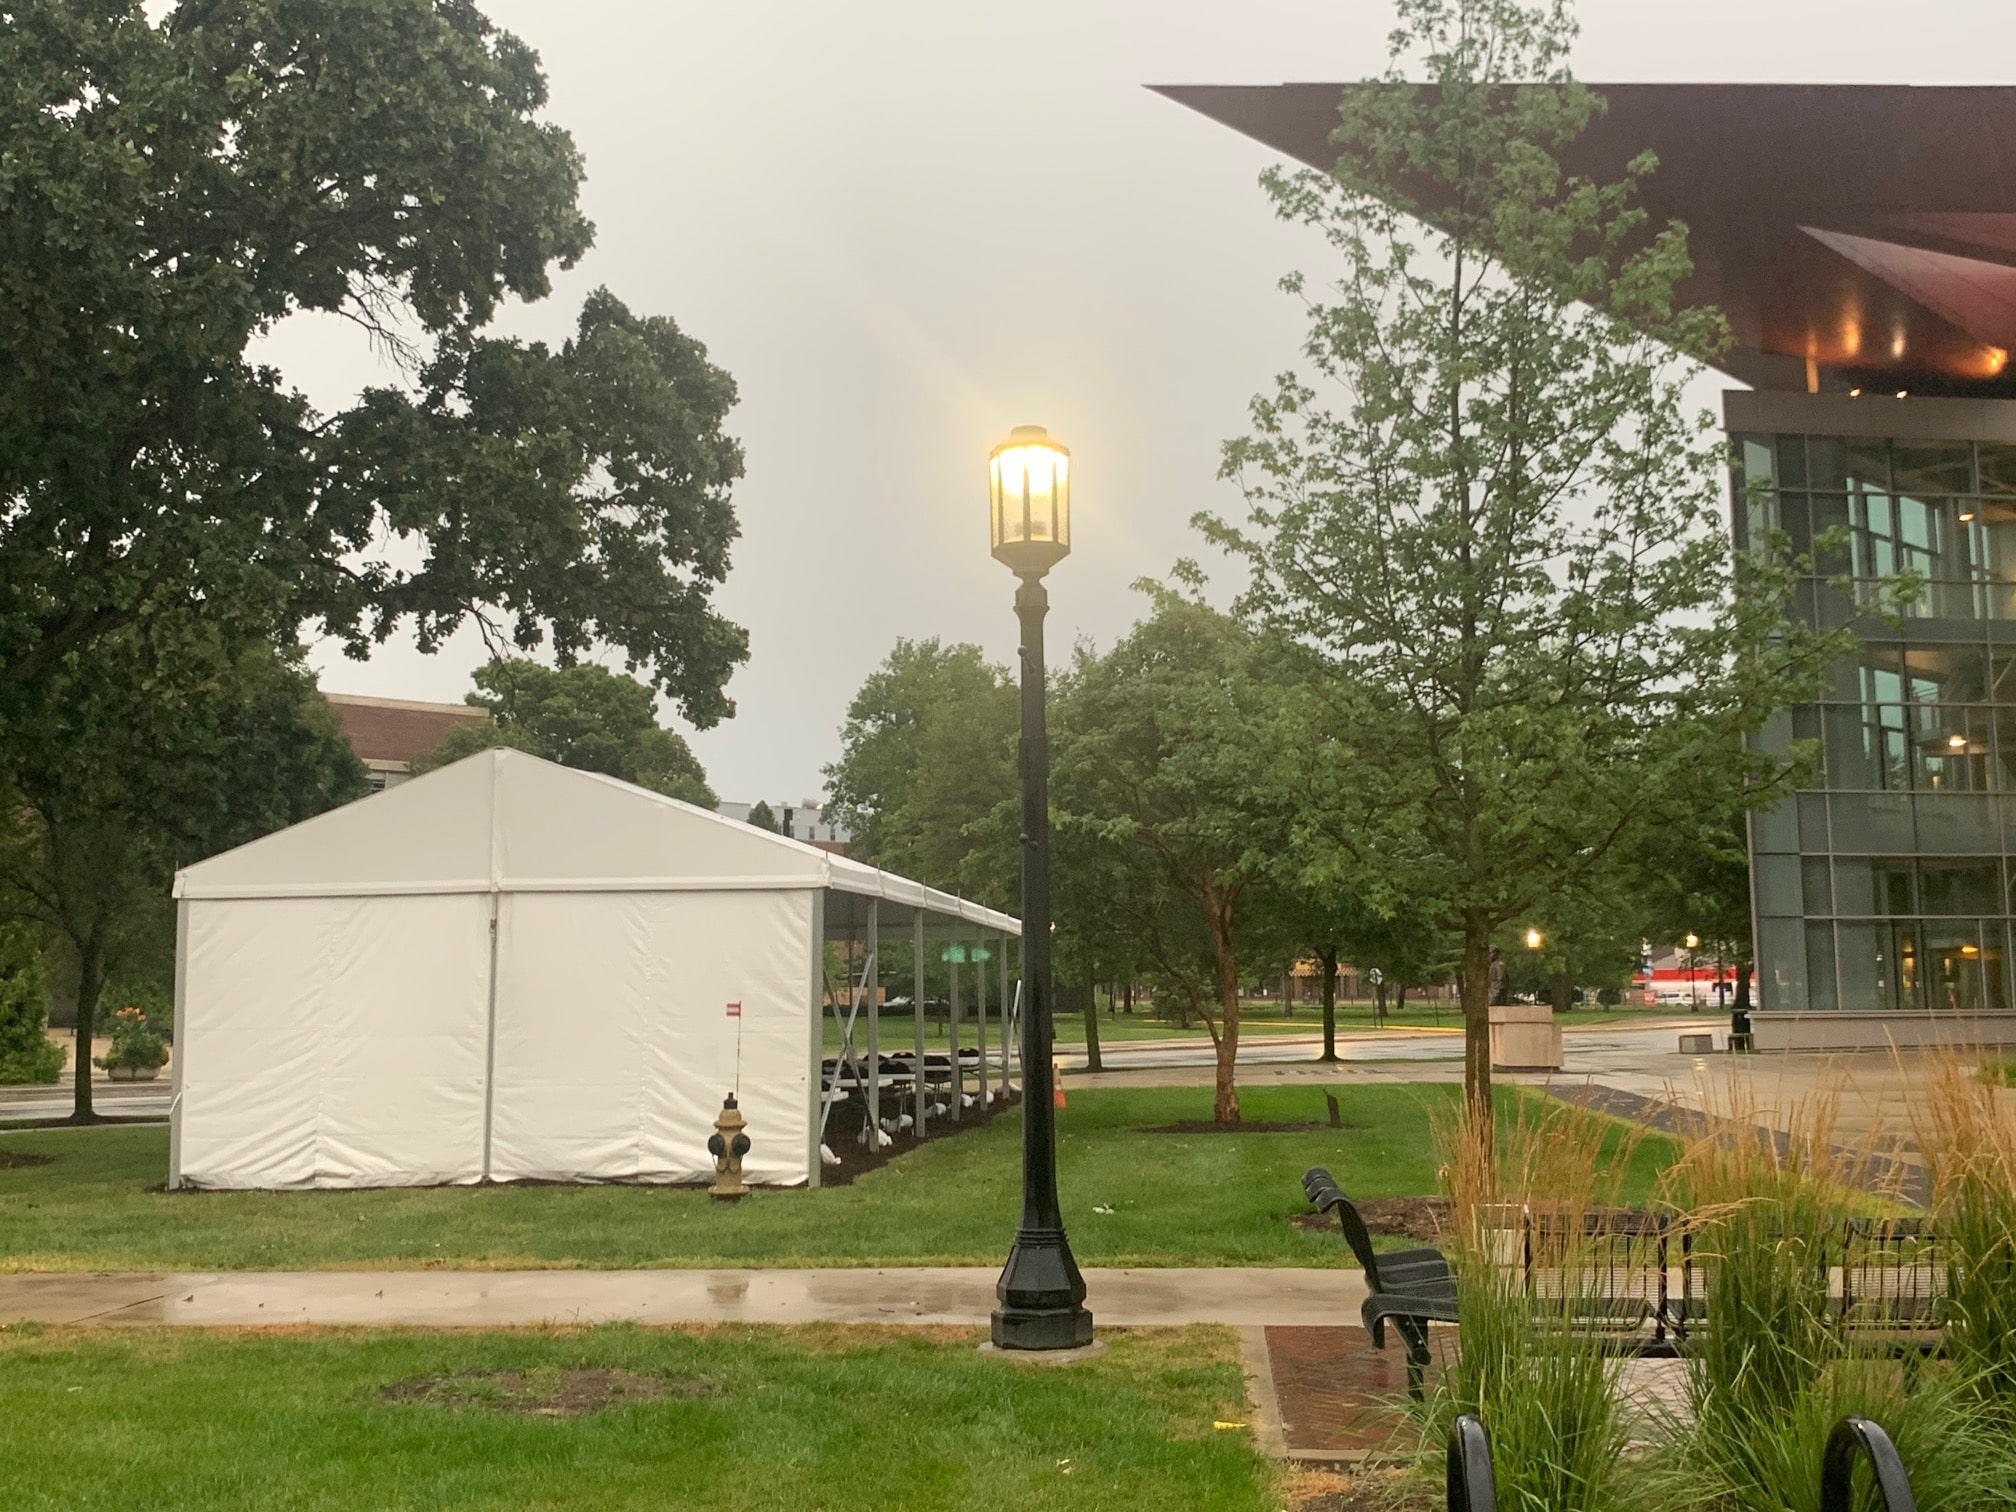 Purdue Tents After Storm - American Pavilion